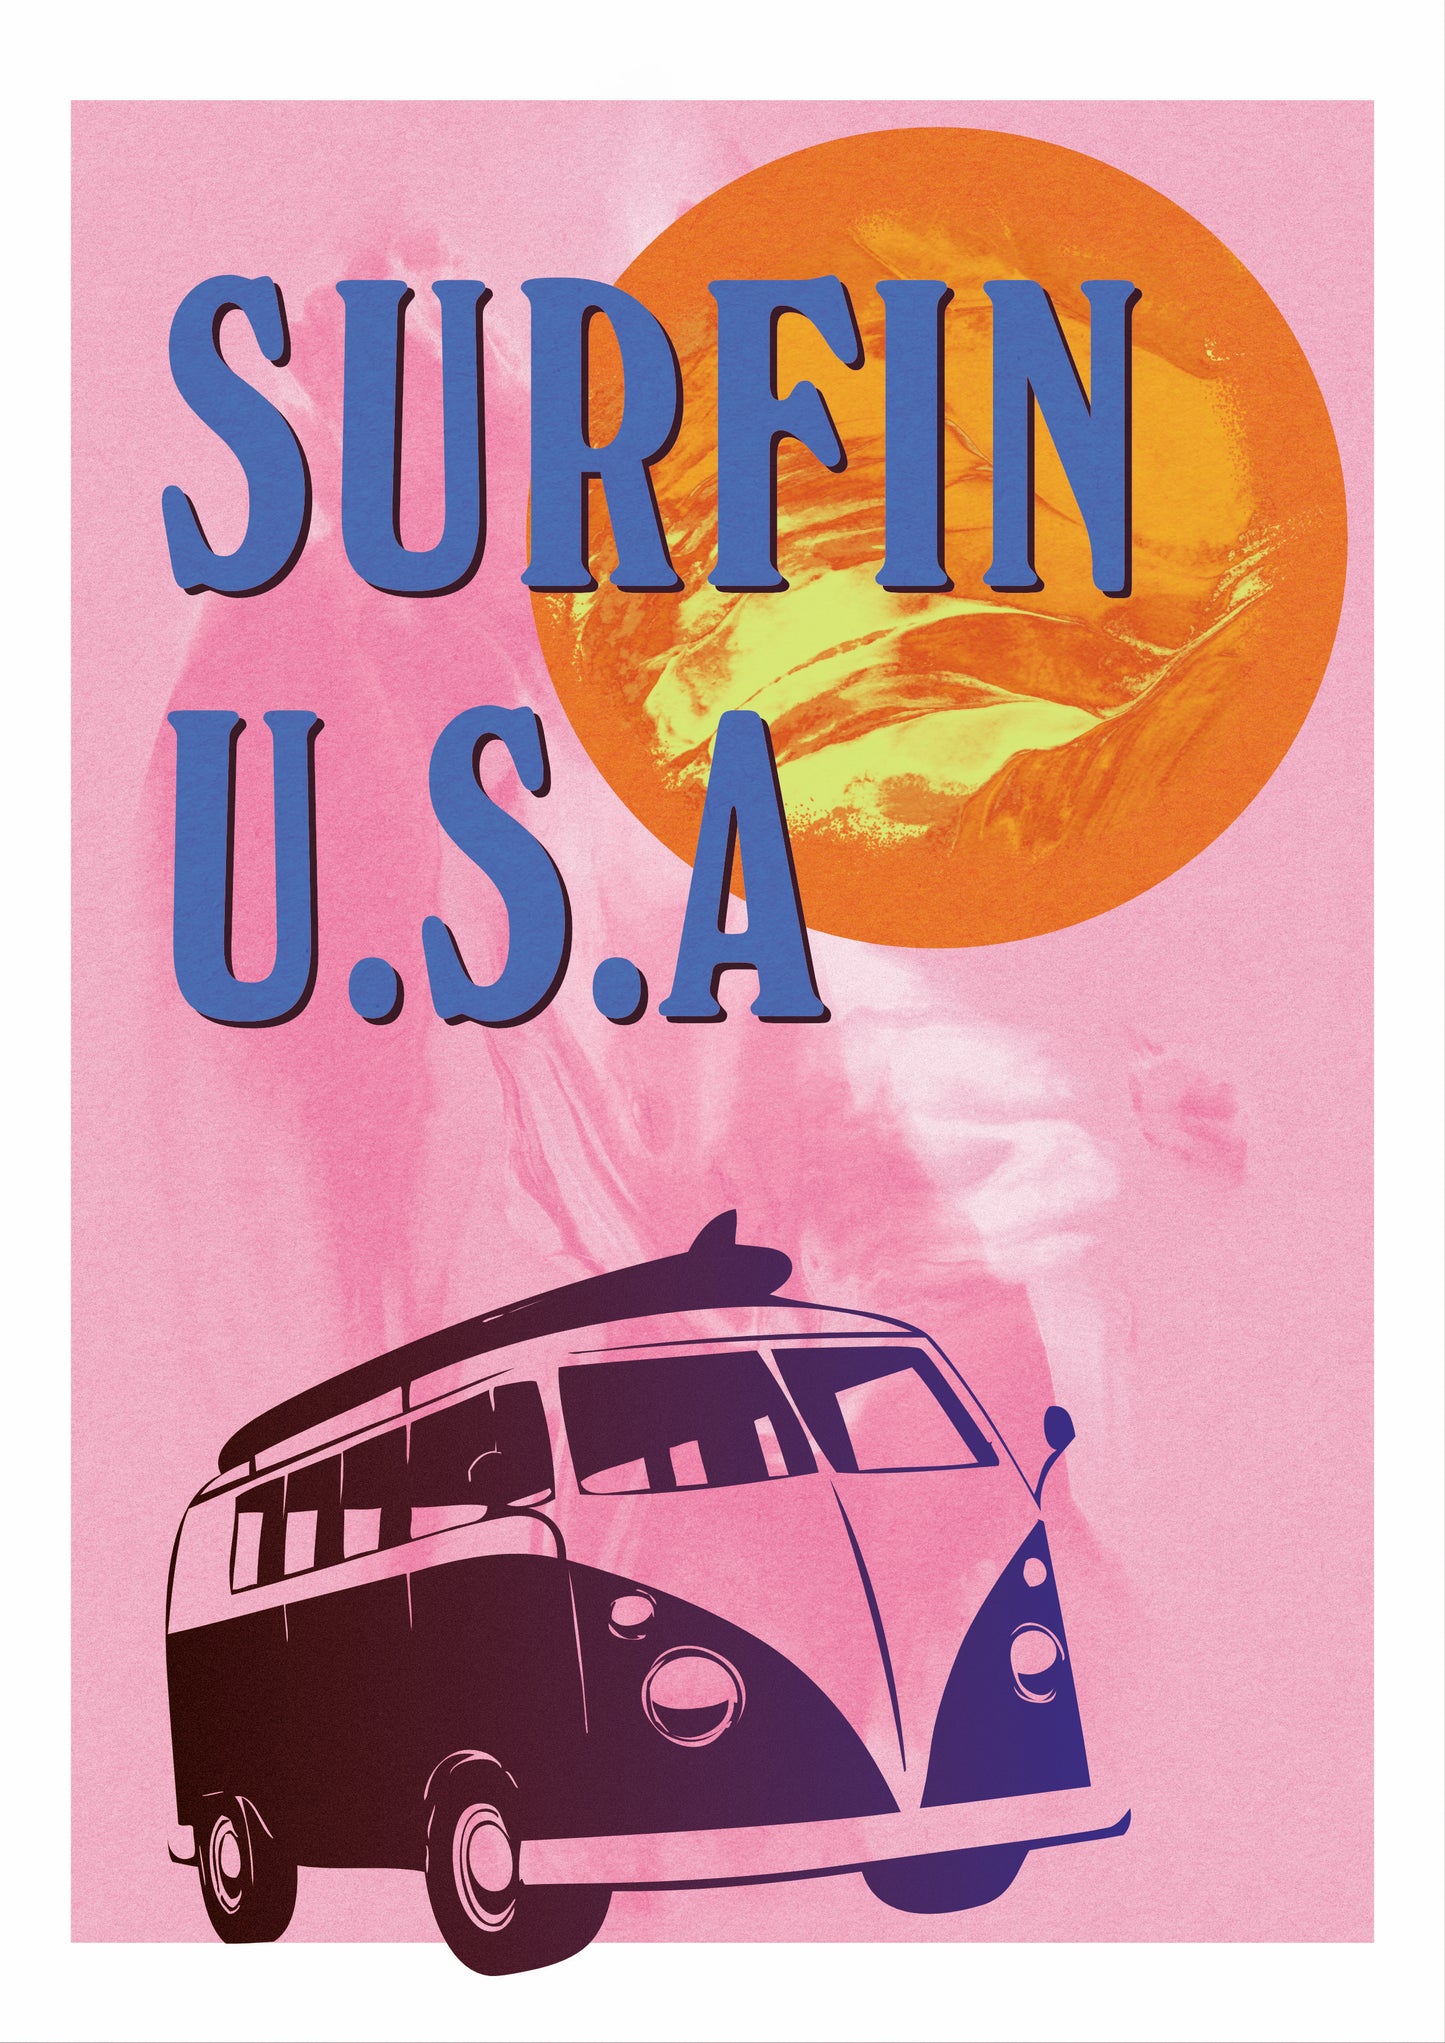 SURFIN USA